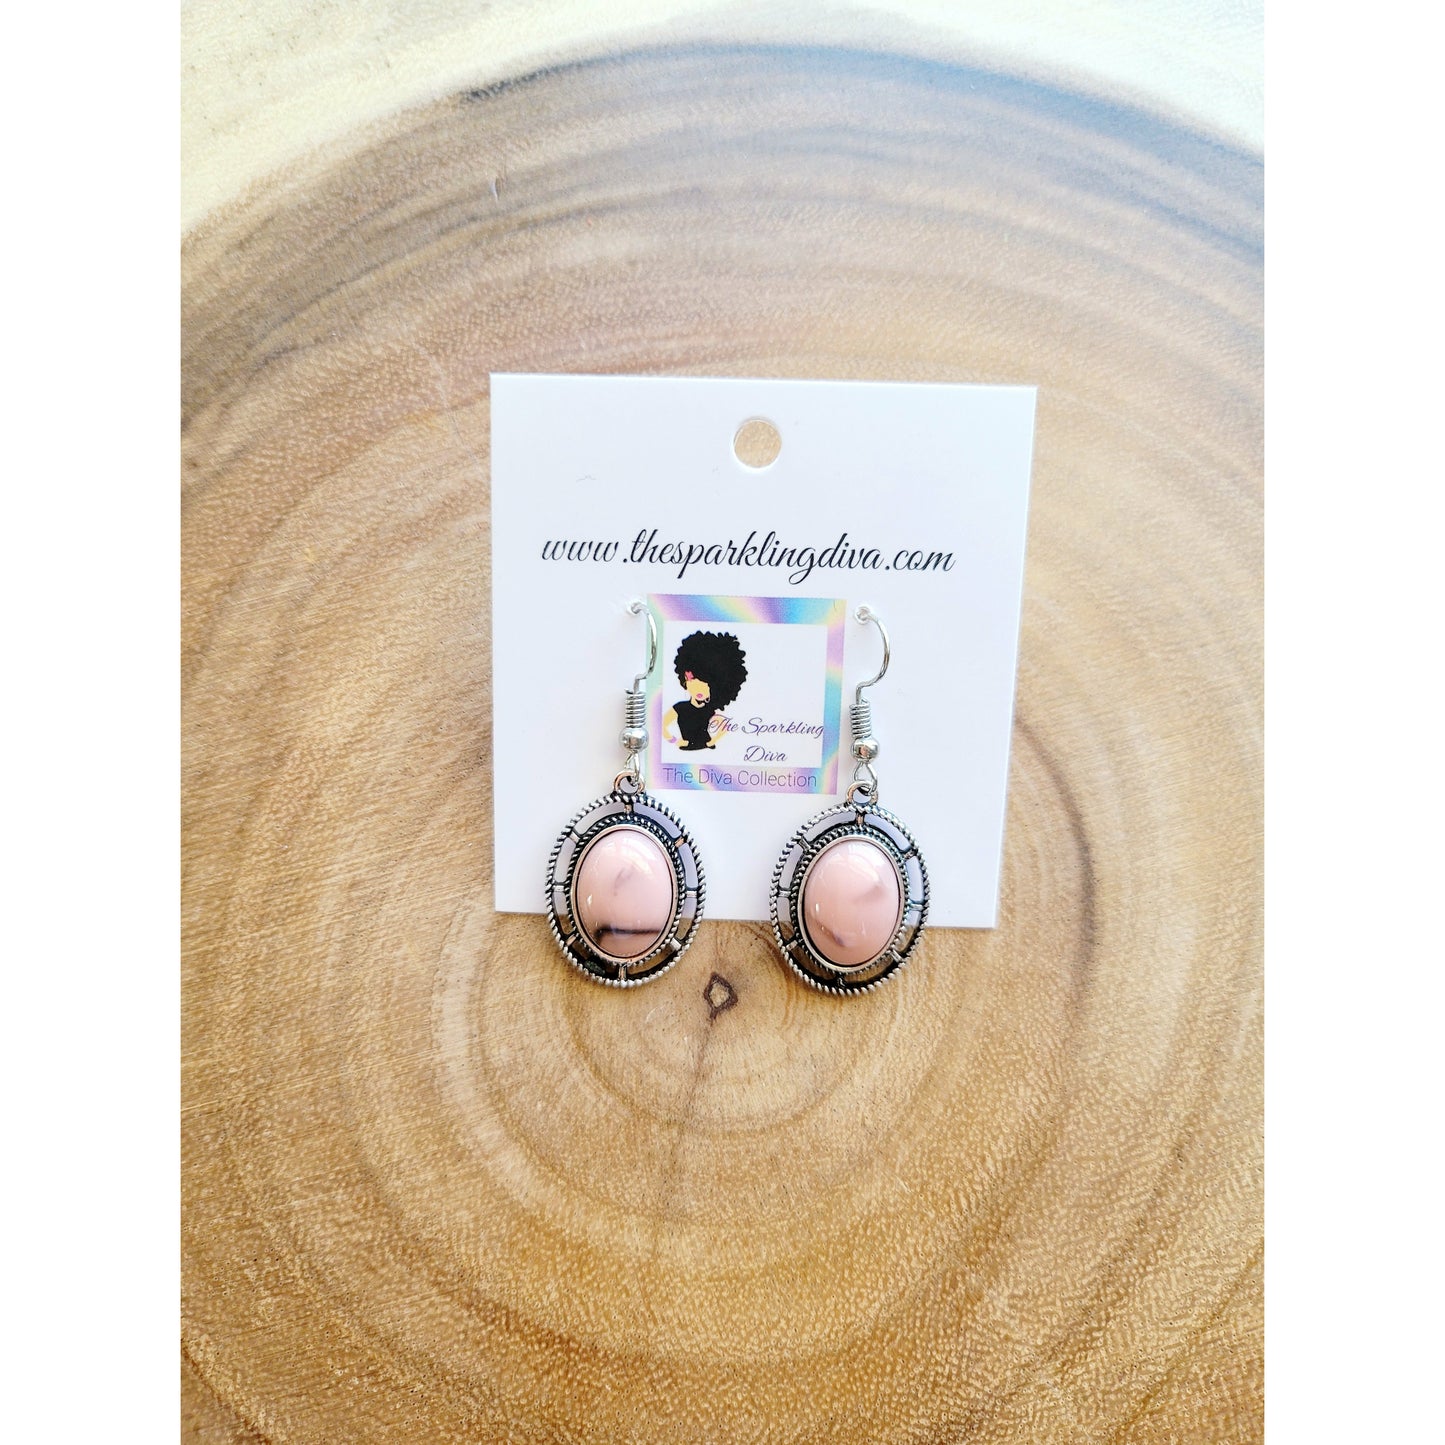 Pretty in pink earrings